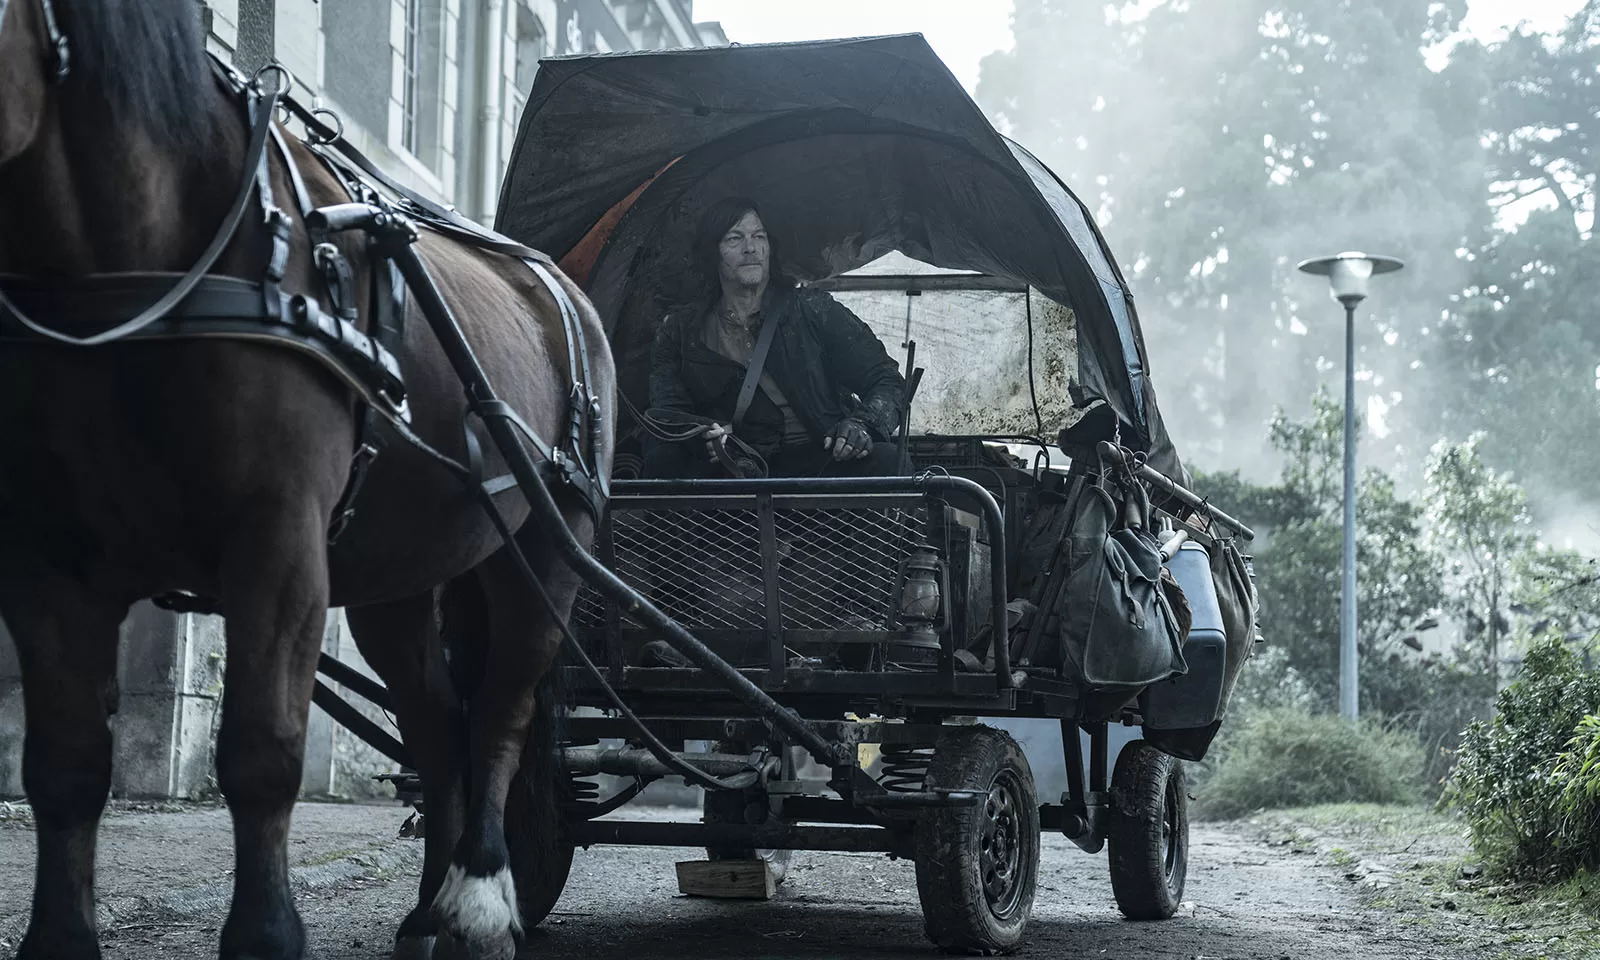 Daryl na carroça se preparando para partir em cena do episódio 2 da 1ª temporada de The Walking Dead: Daryl Dixon.